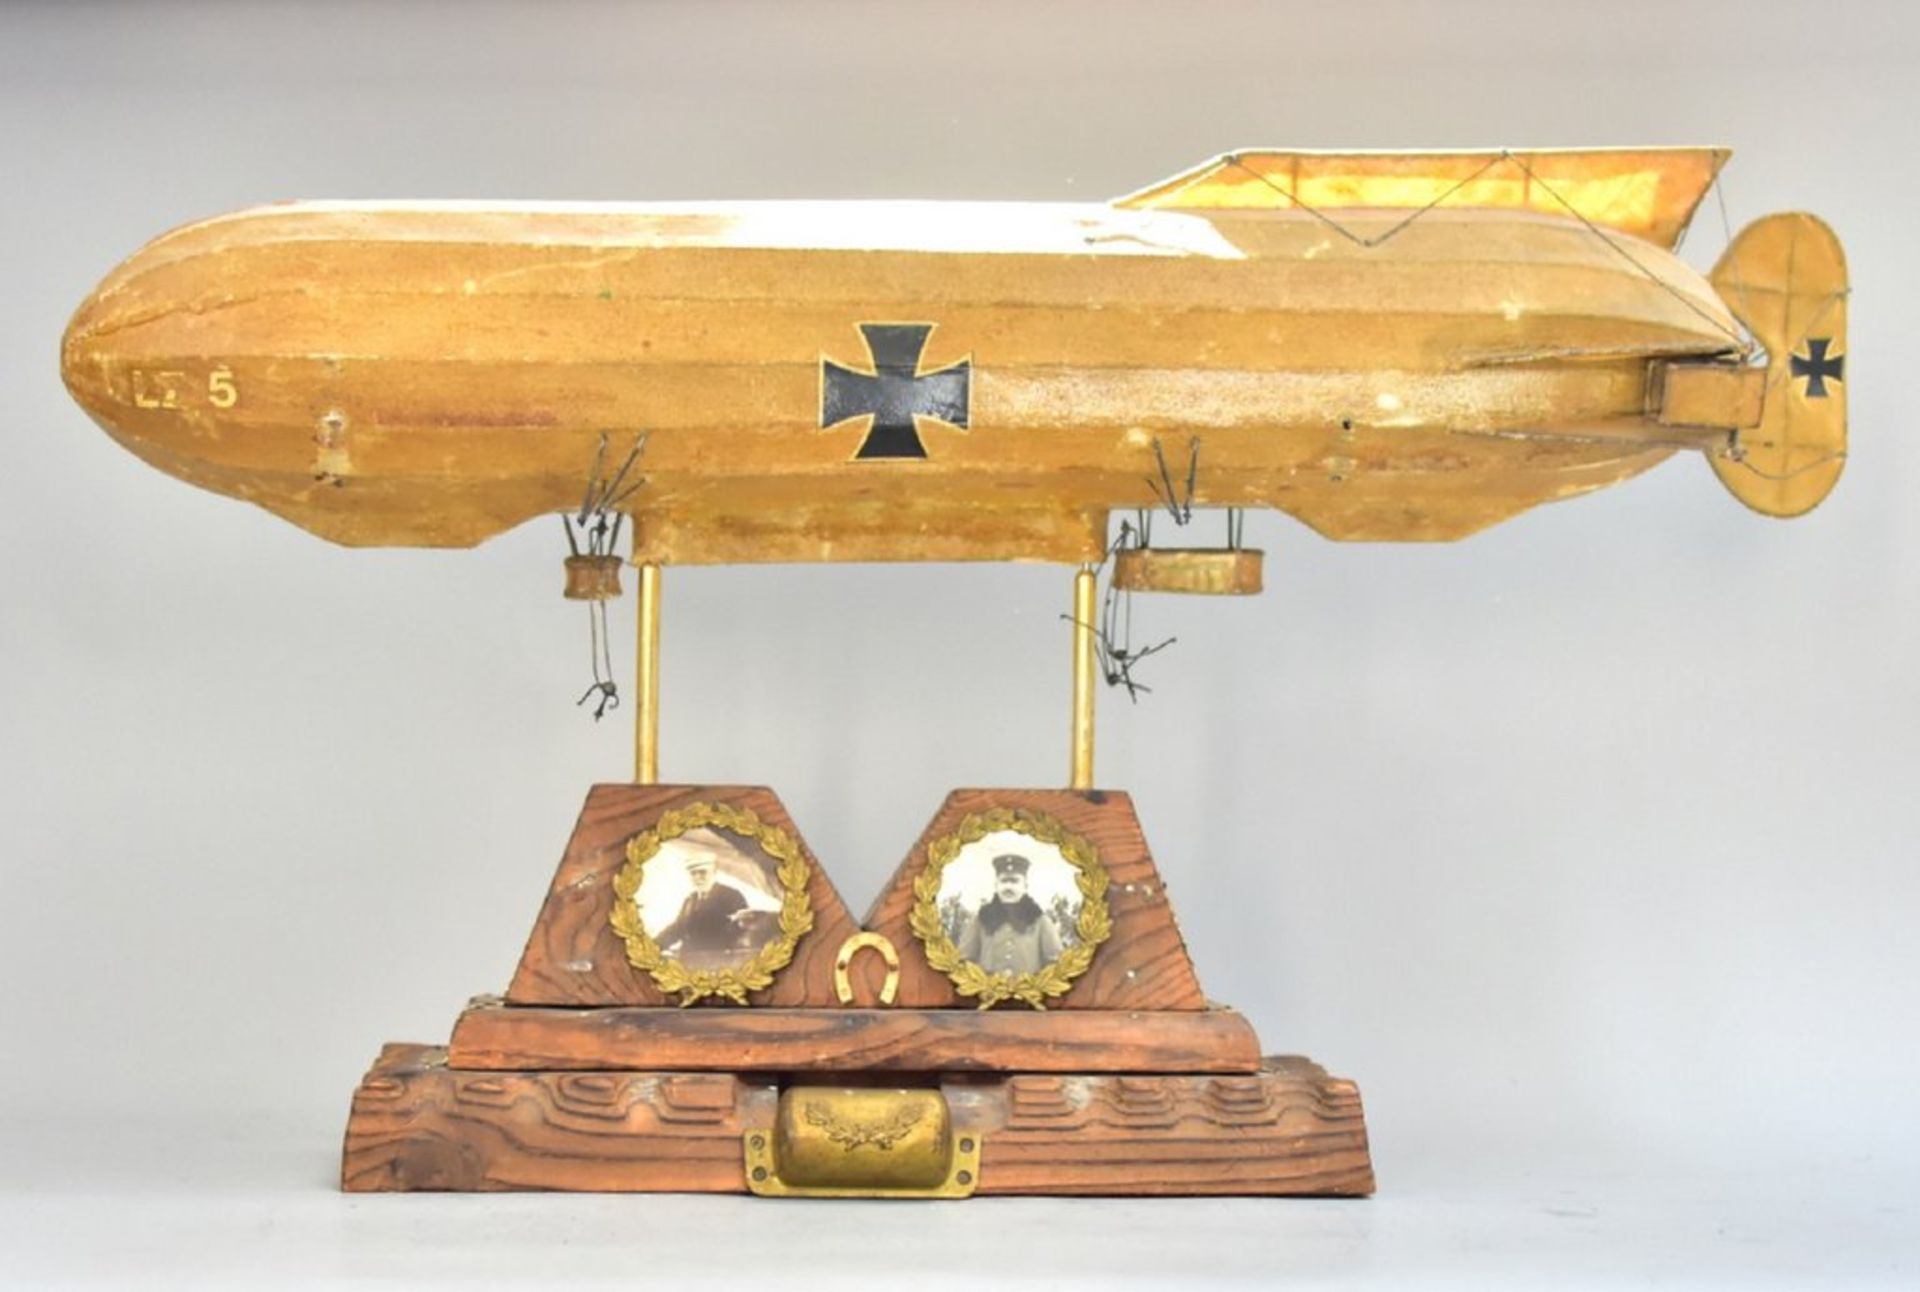 Luftschiff LZ 5, Zeppelin- Modell, Metall, gewachstes Leinen, Holz, mit Bildnis: Graf Zeppelin und